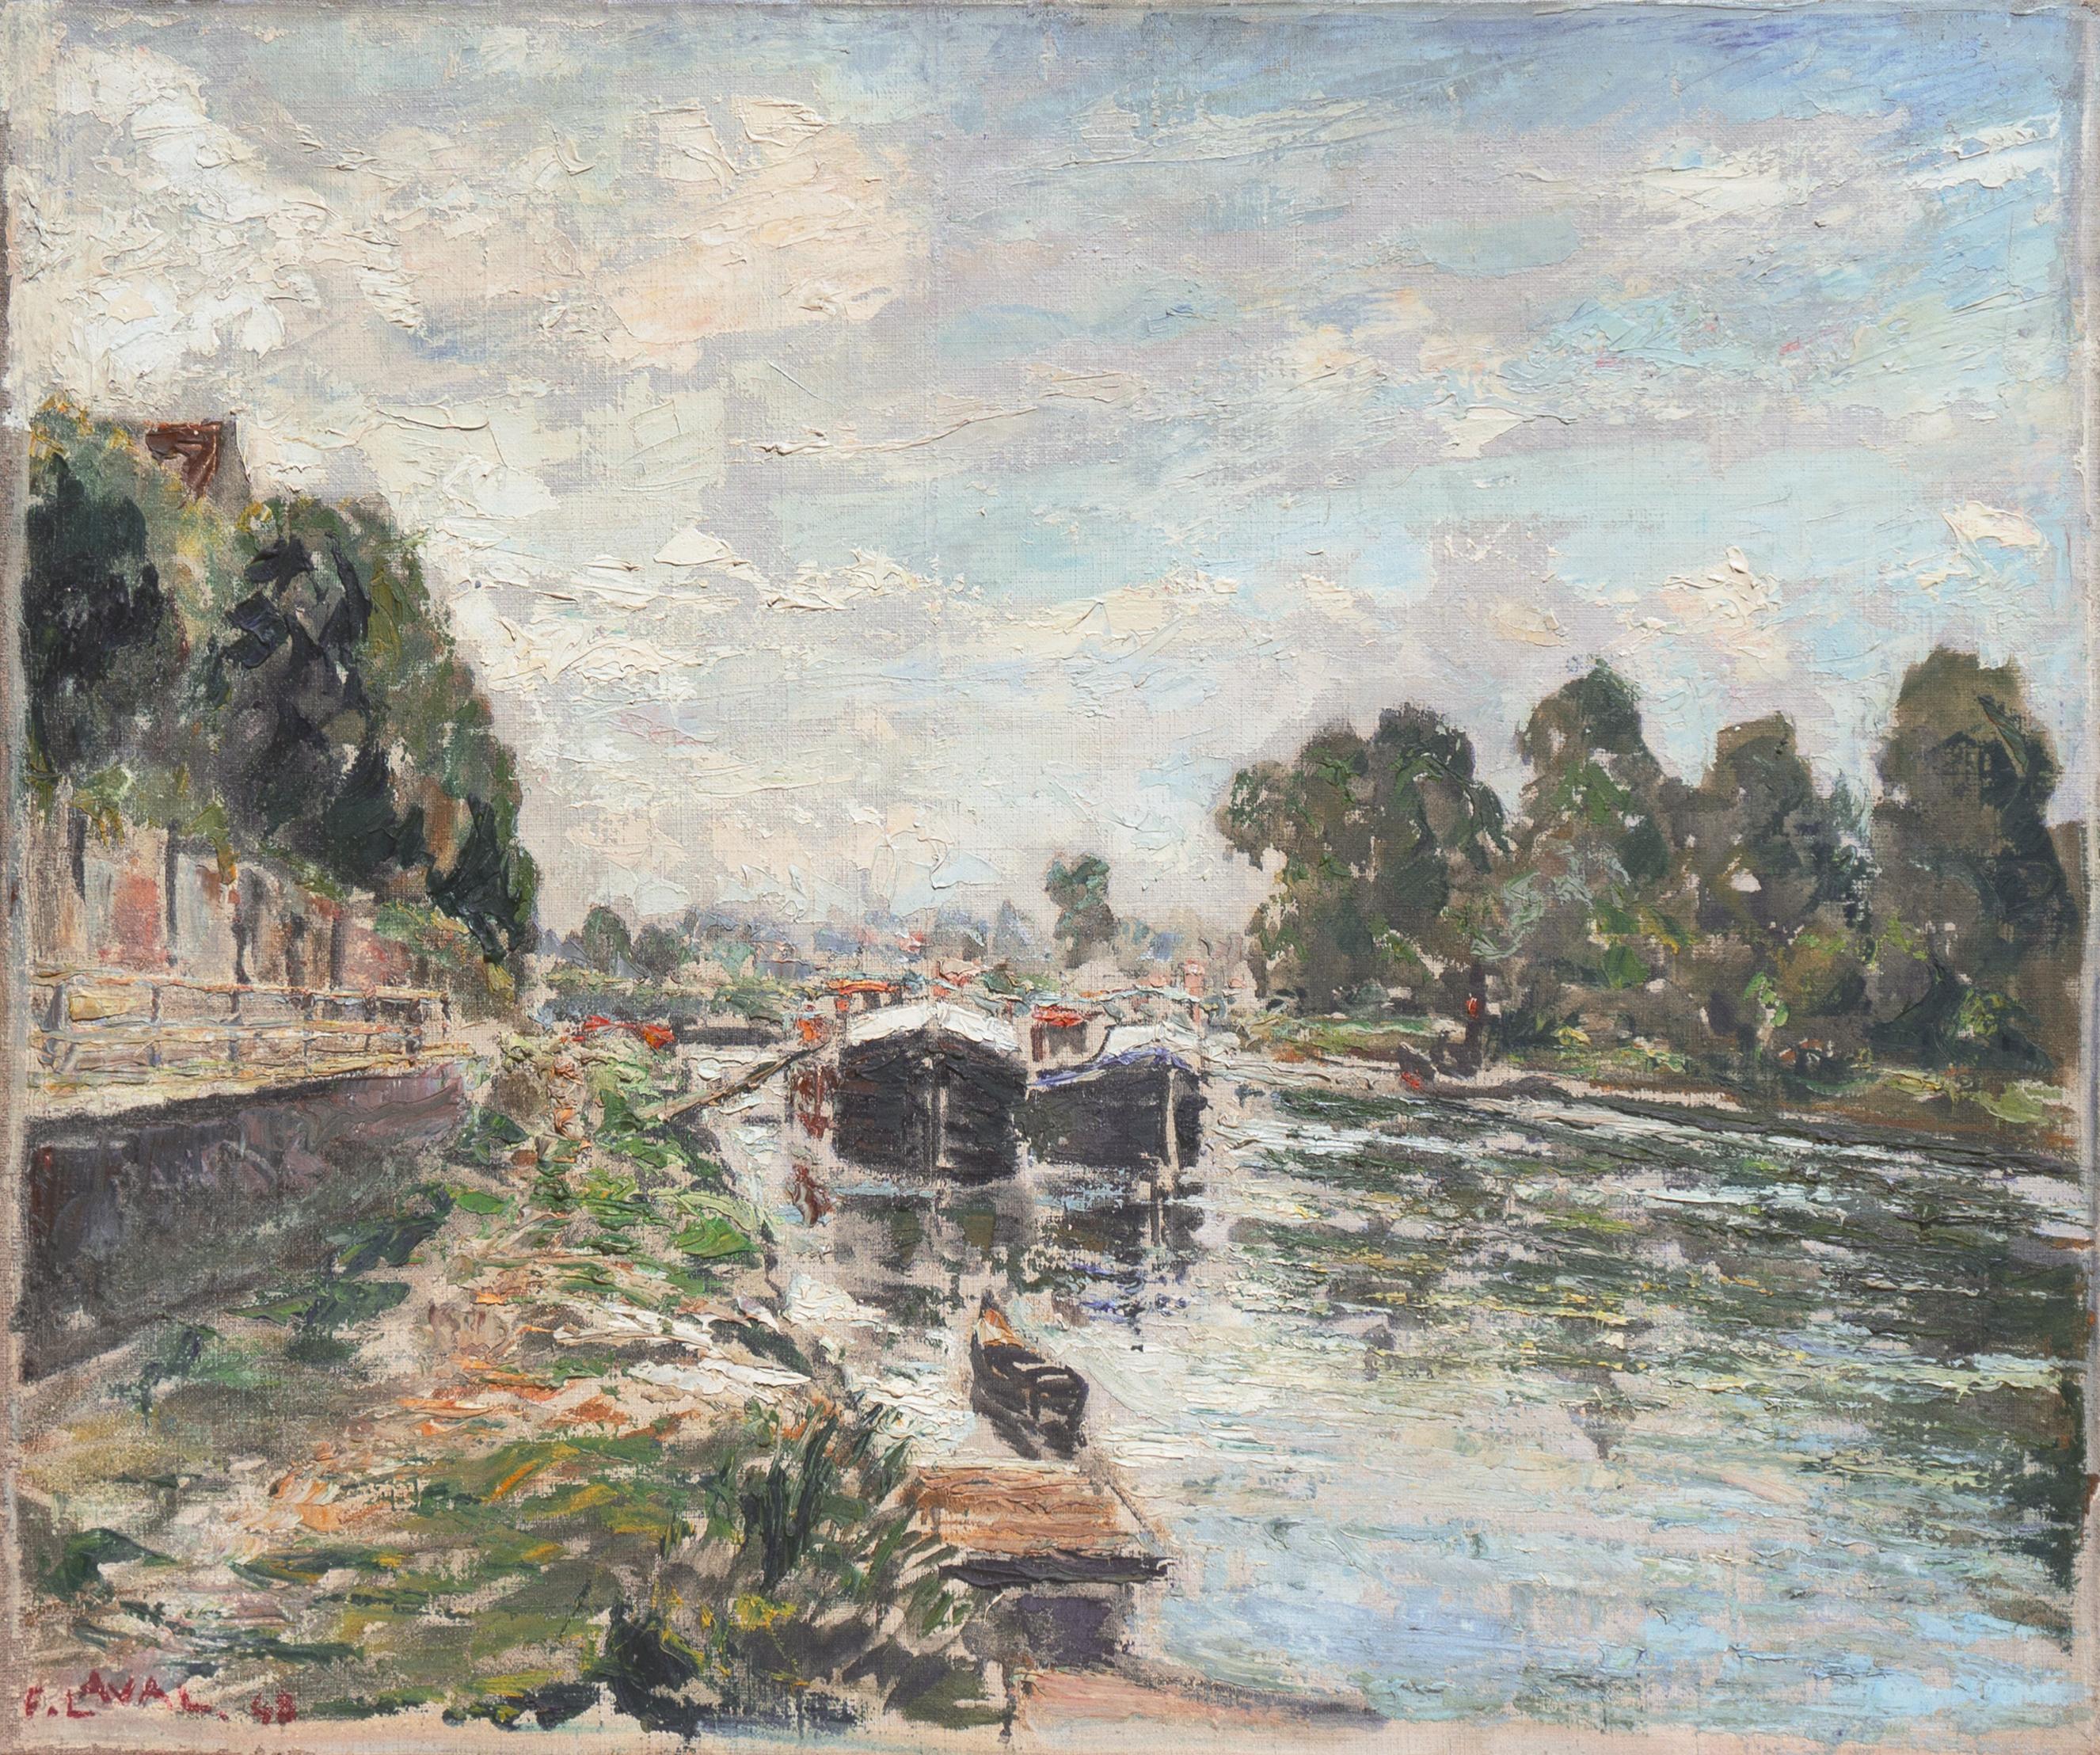 Fernand LAVAL Landscape Painting - 'River Landscape', French Impressionist, Musée d'Art Moderne, Salon d'Automne